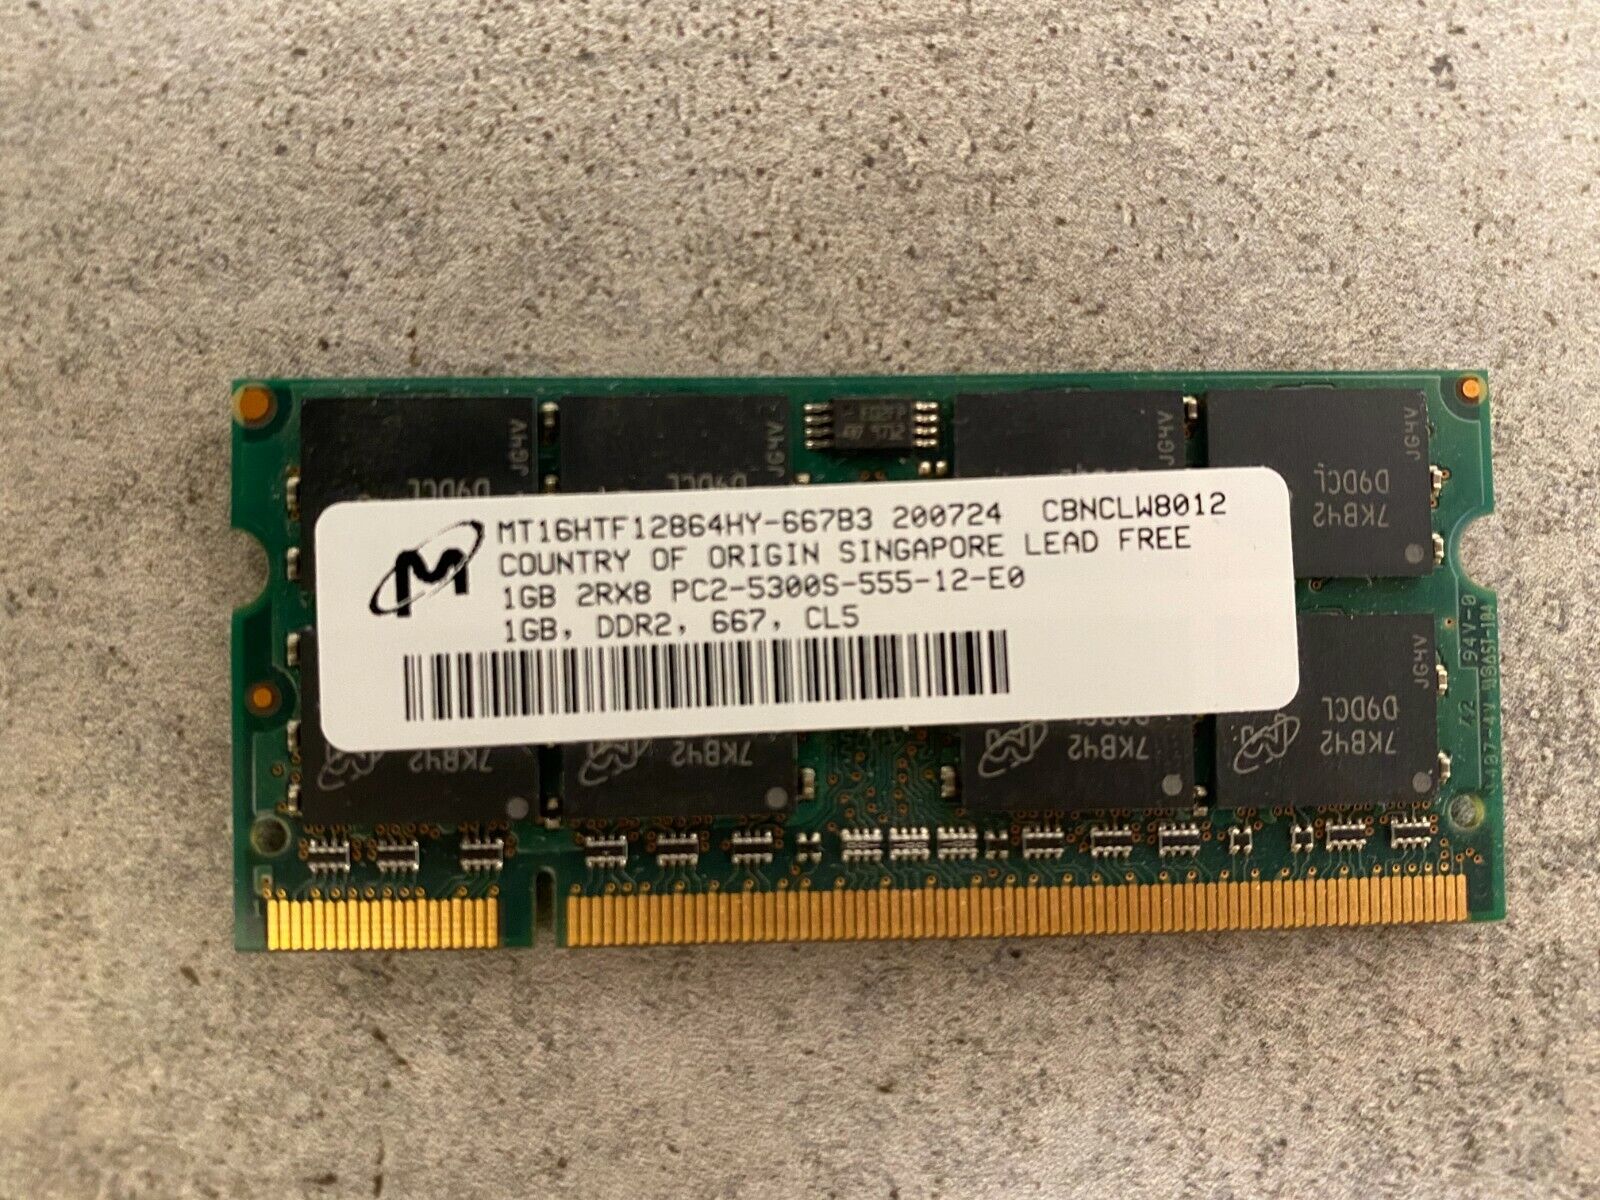 Micron 1 GB SO-DIMM DDR2 Memory MT16HTF12864HY